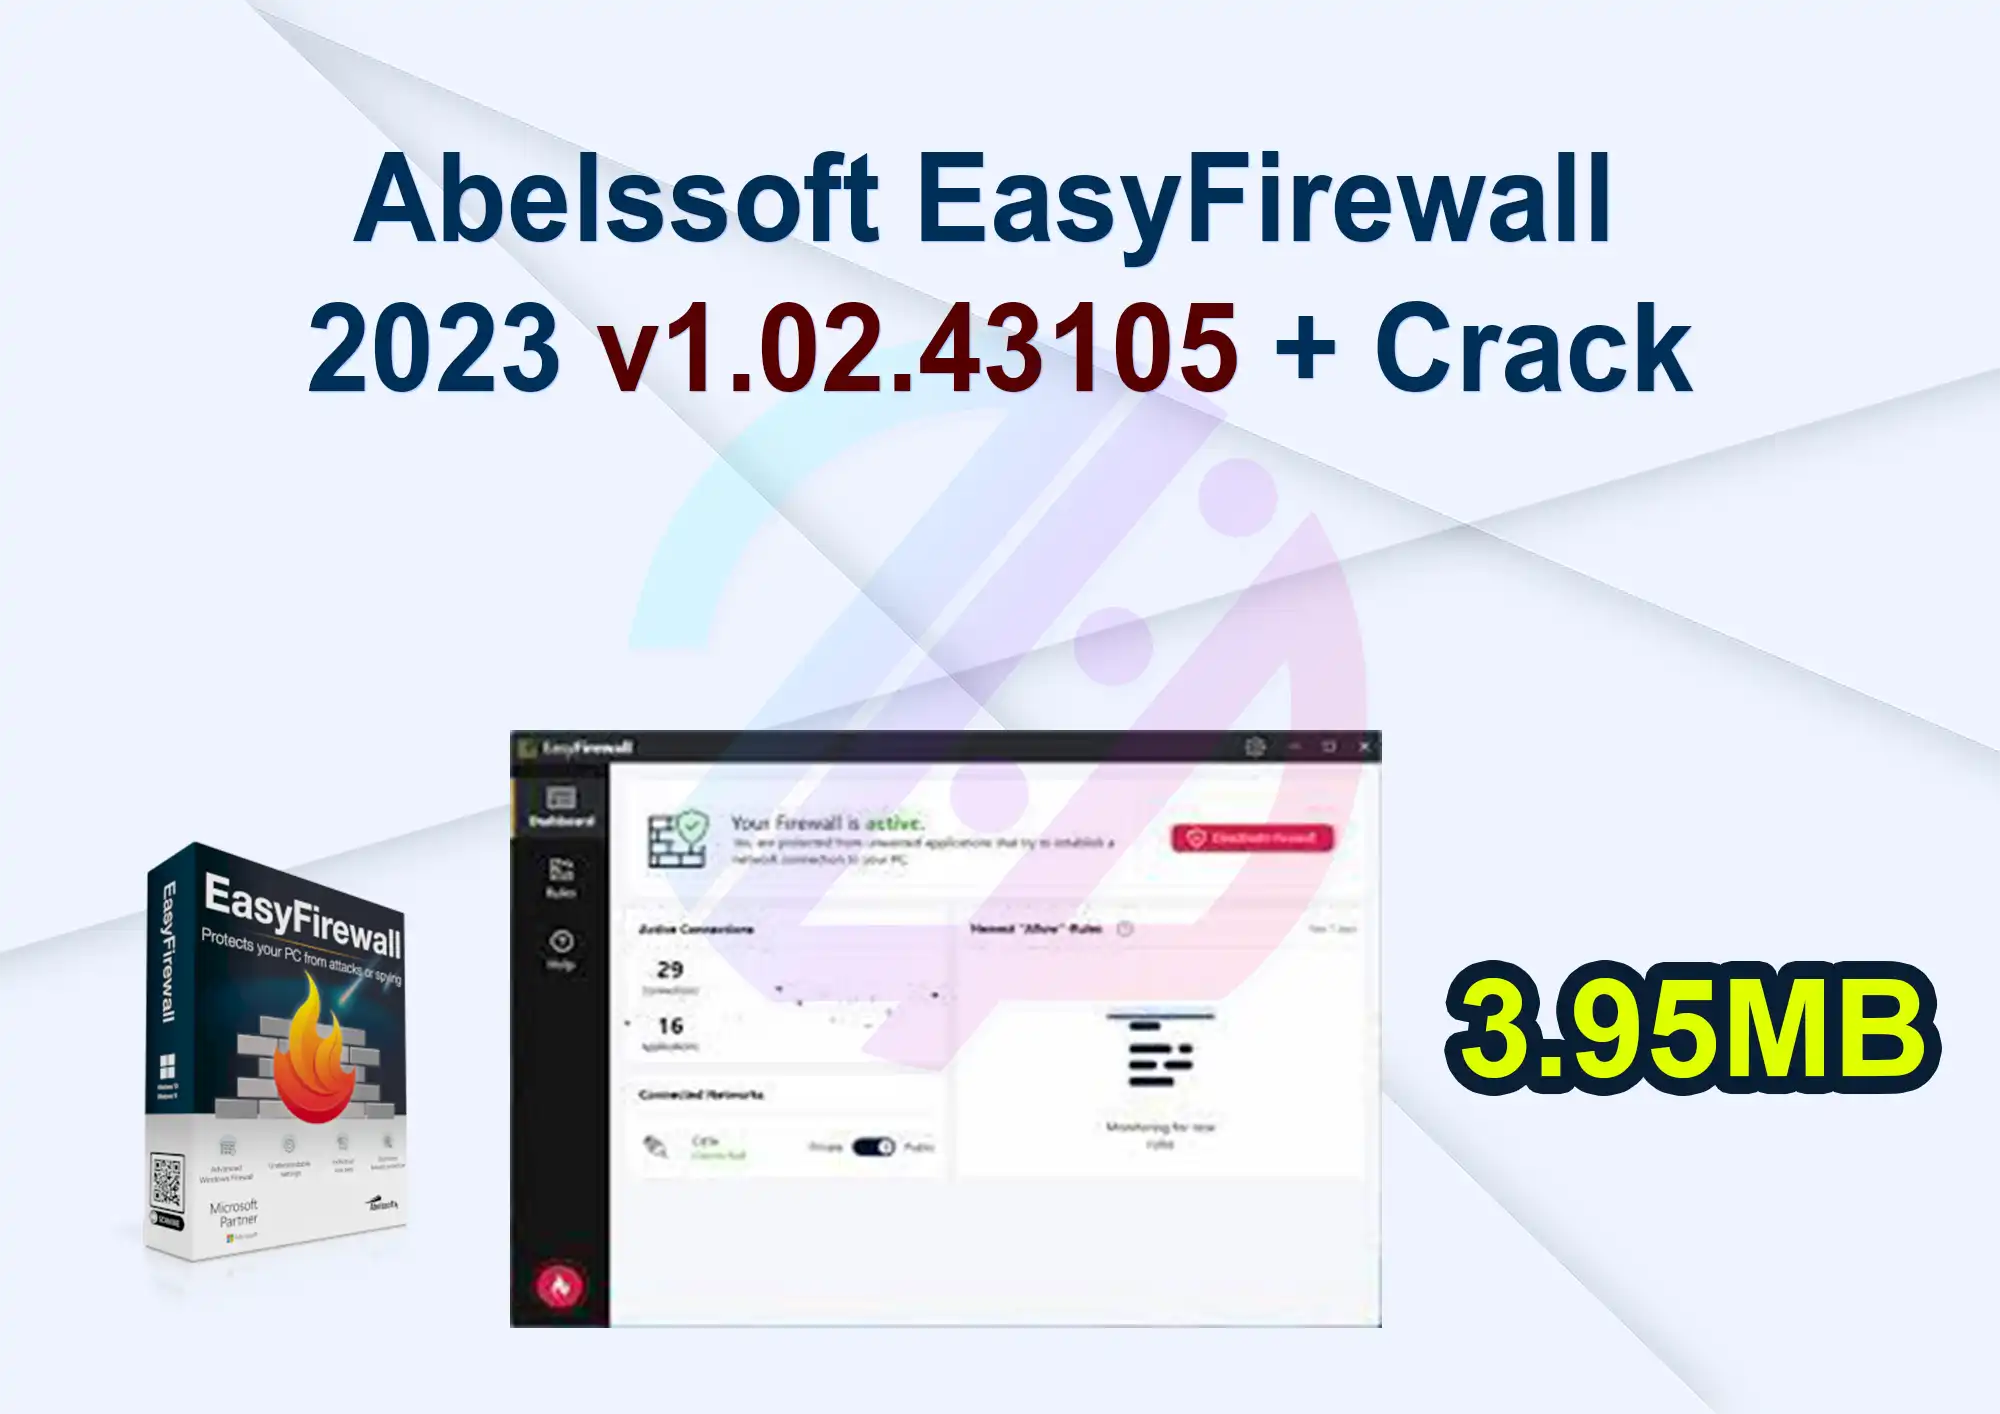 Abelssoft EasyFirewall 2023 v1.02.43105 + Crack